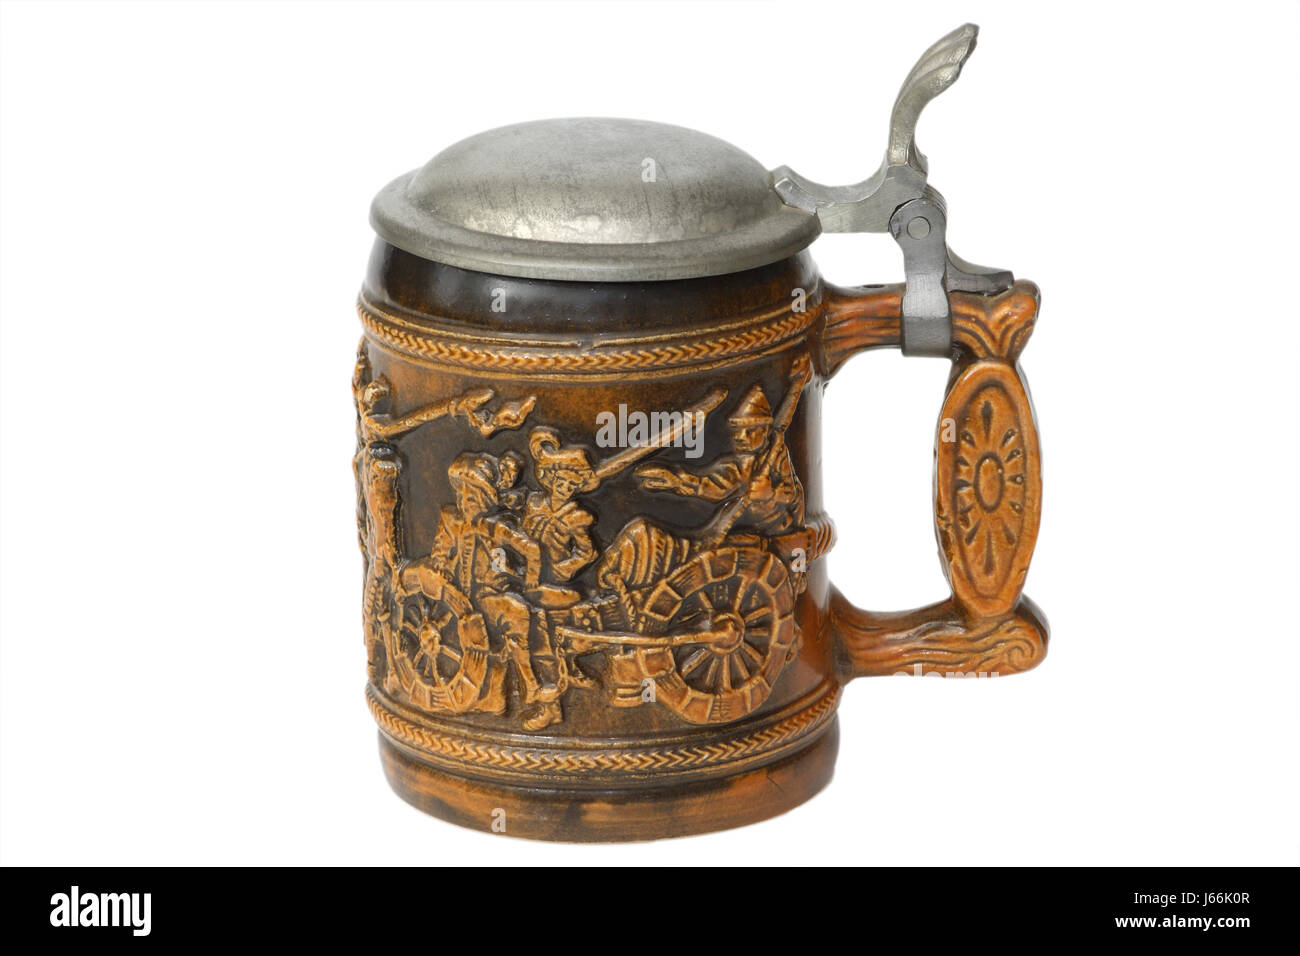 Verseuse stein beer mug souvenir ancien verseuse céramique décoration bière stein pinte d'étain Banque D'Images